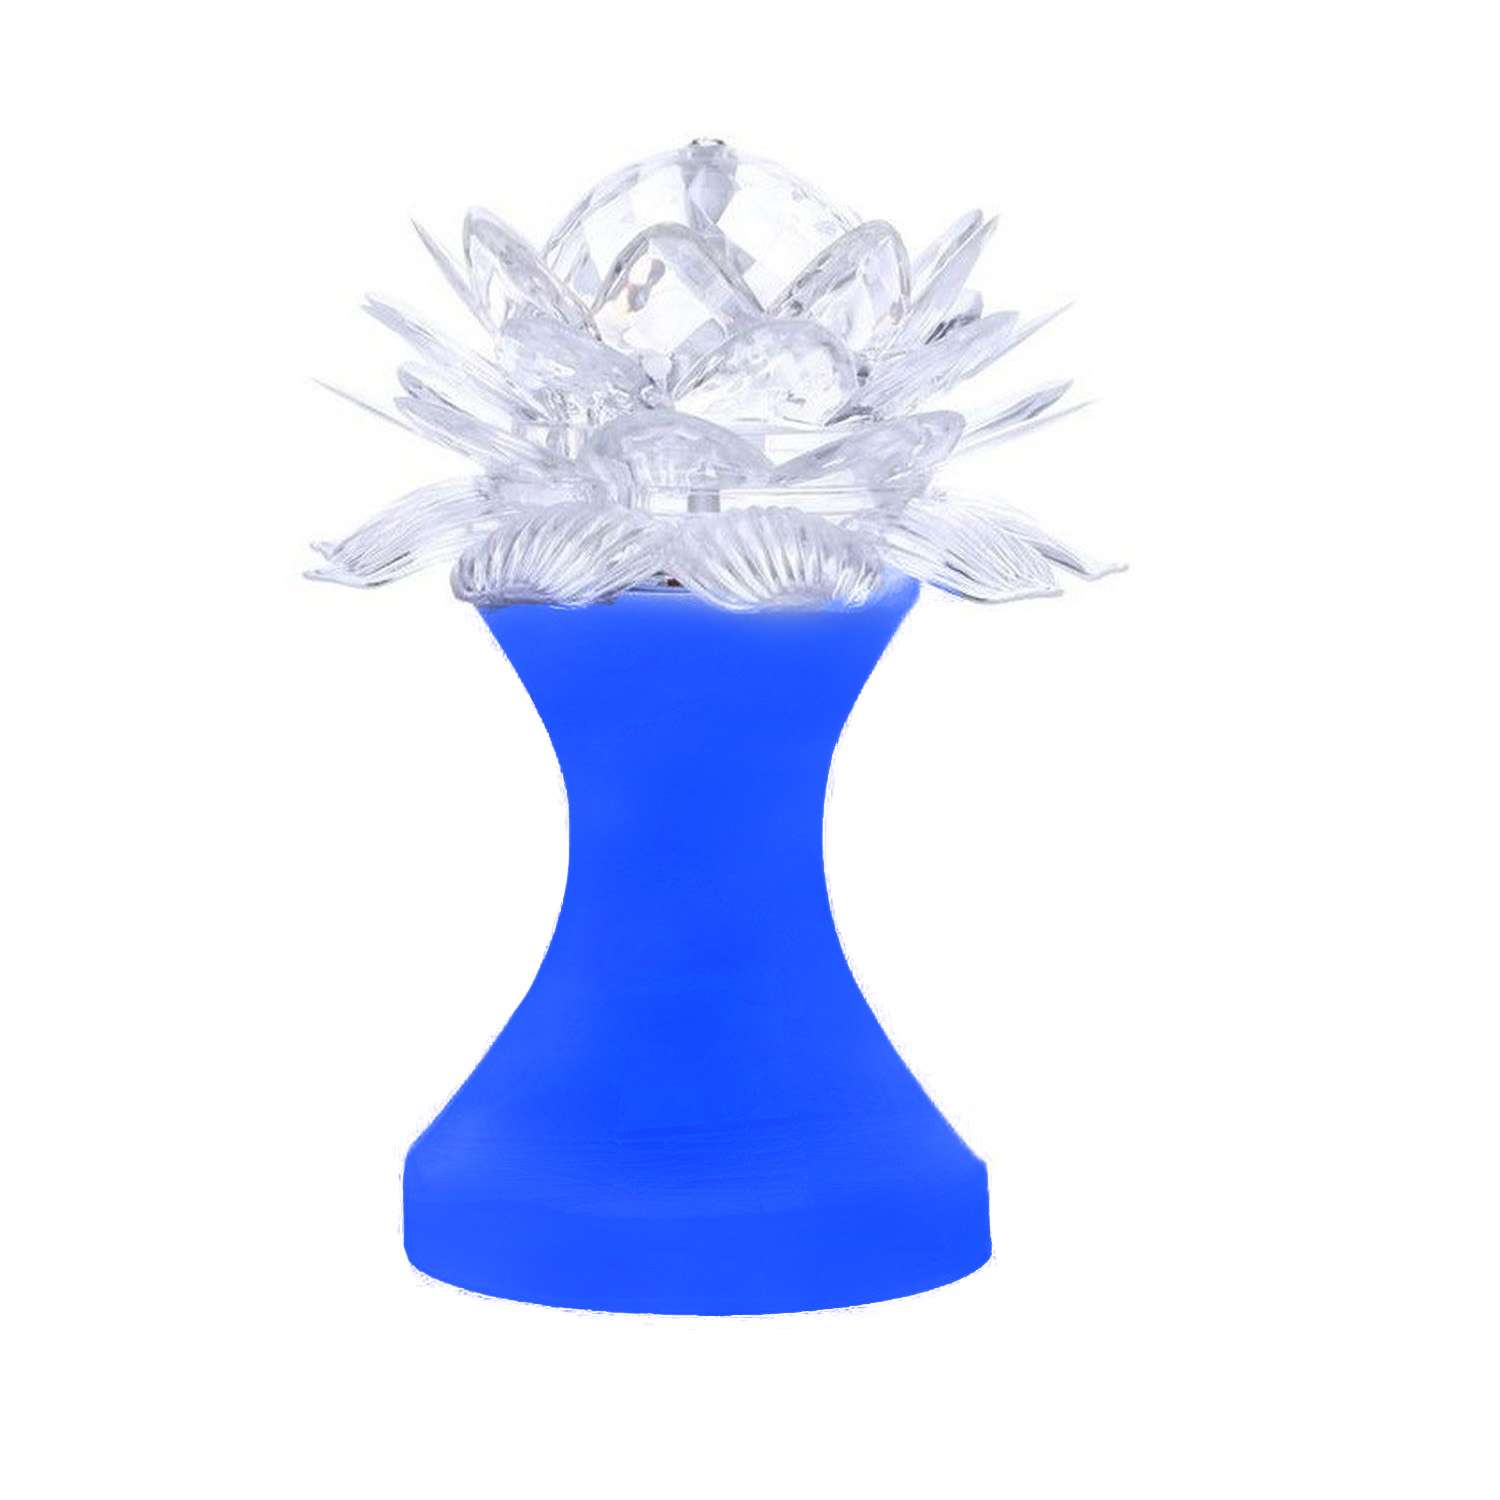 Ночник Uniglodis хрустальный цветок синяя подставка - фото 2